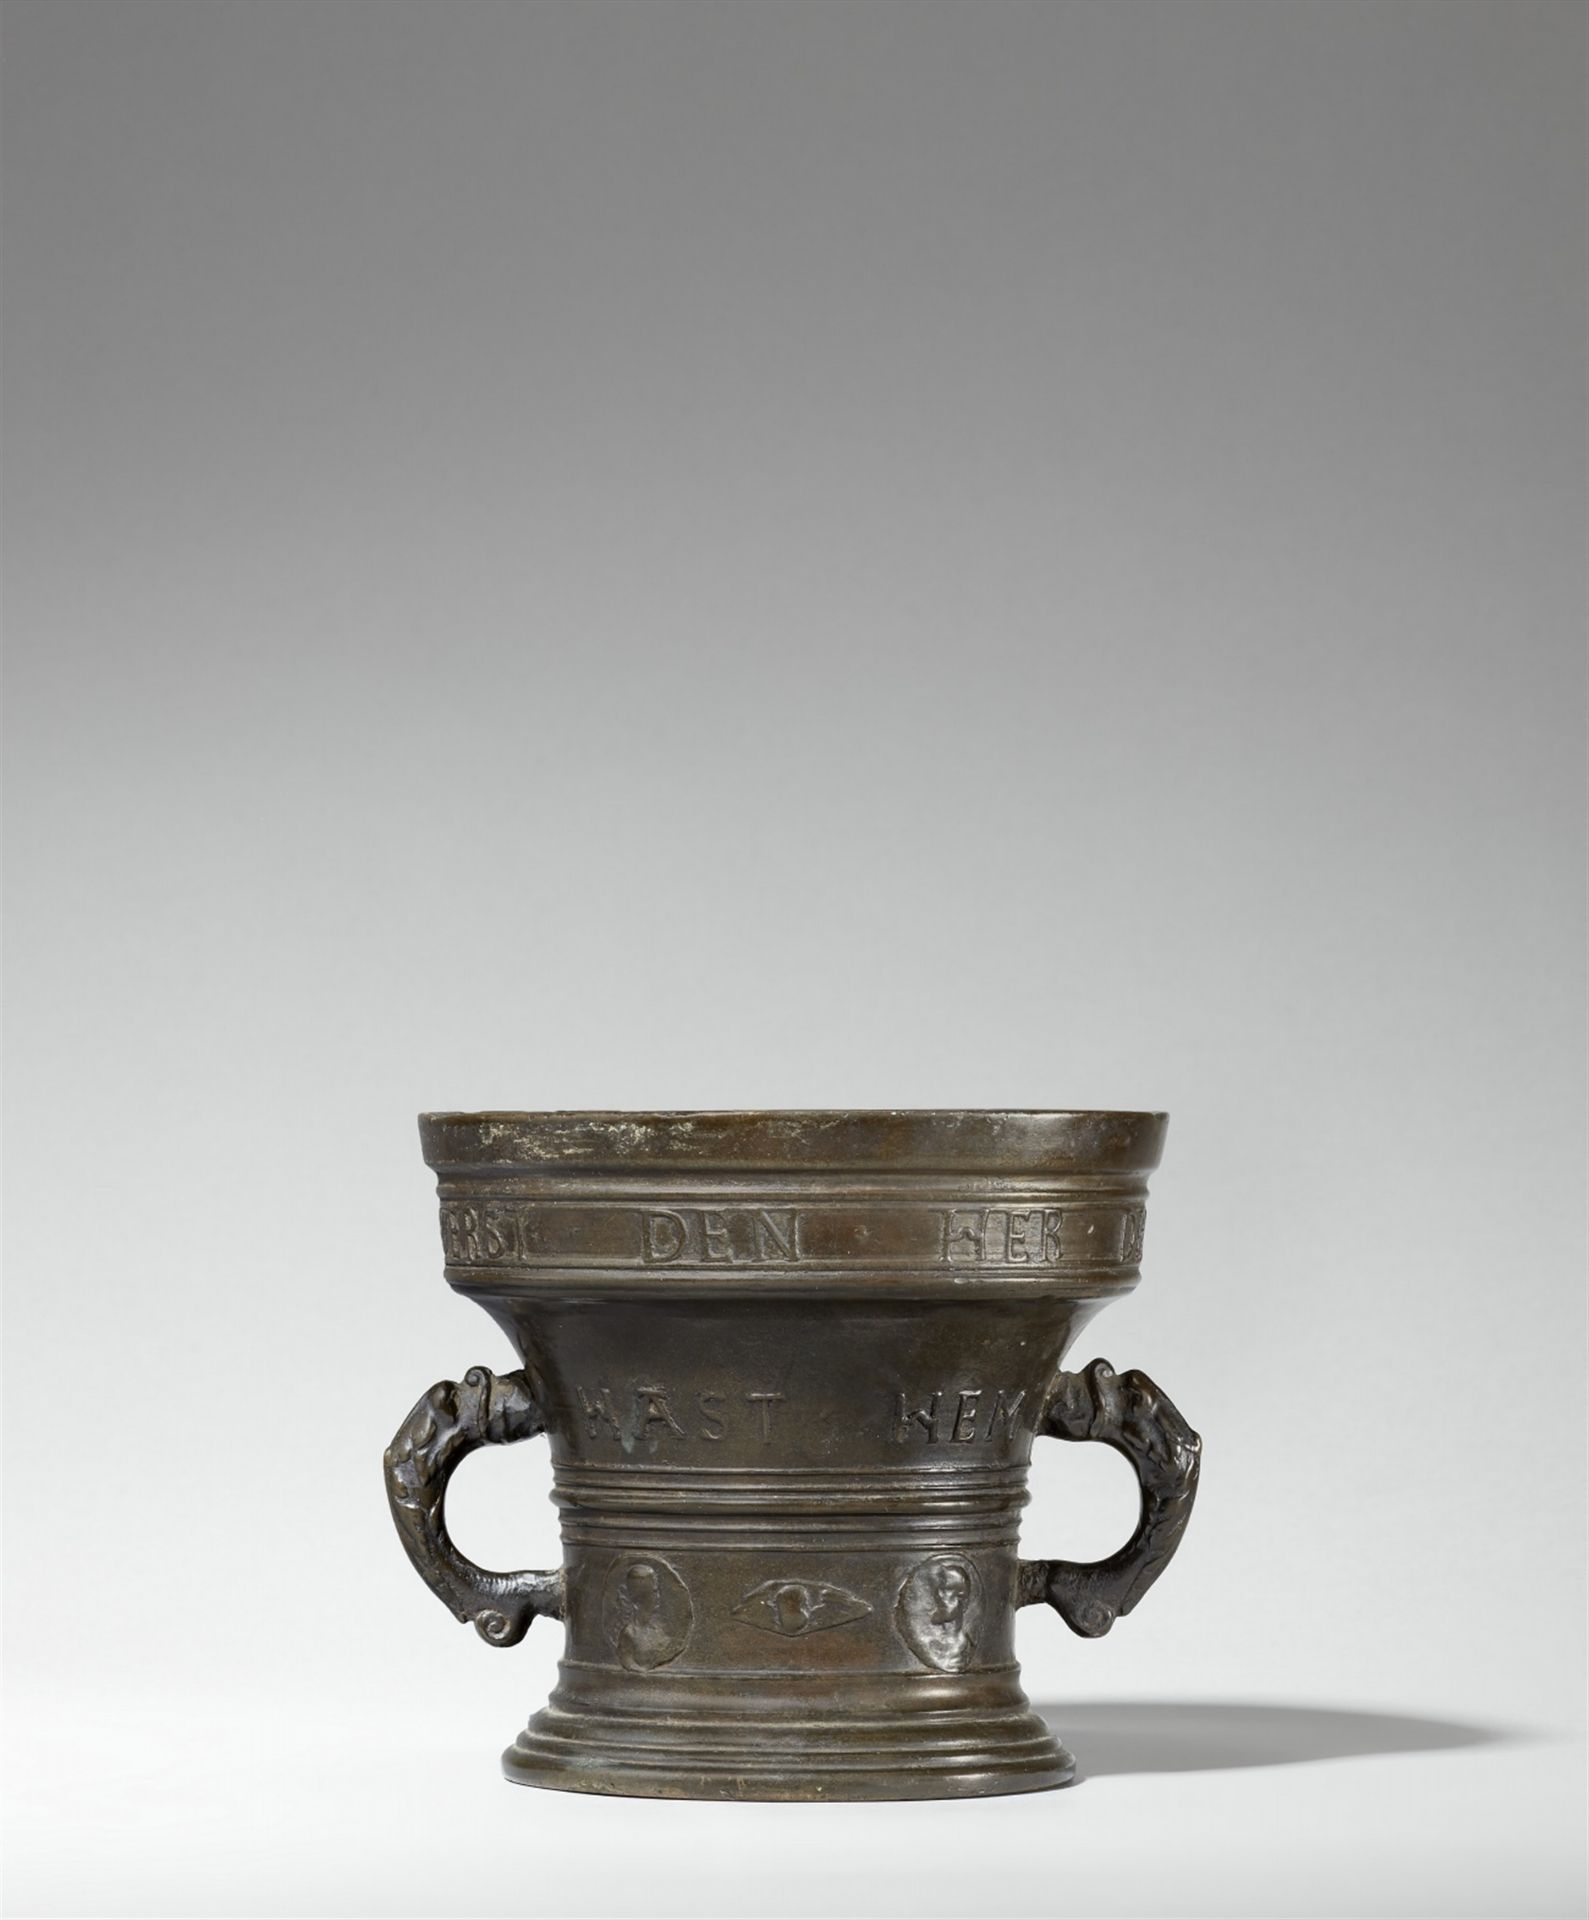 A rare Aachen mortar from 1580